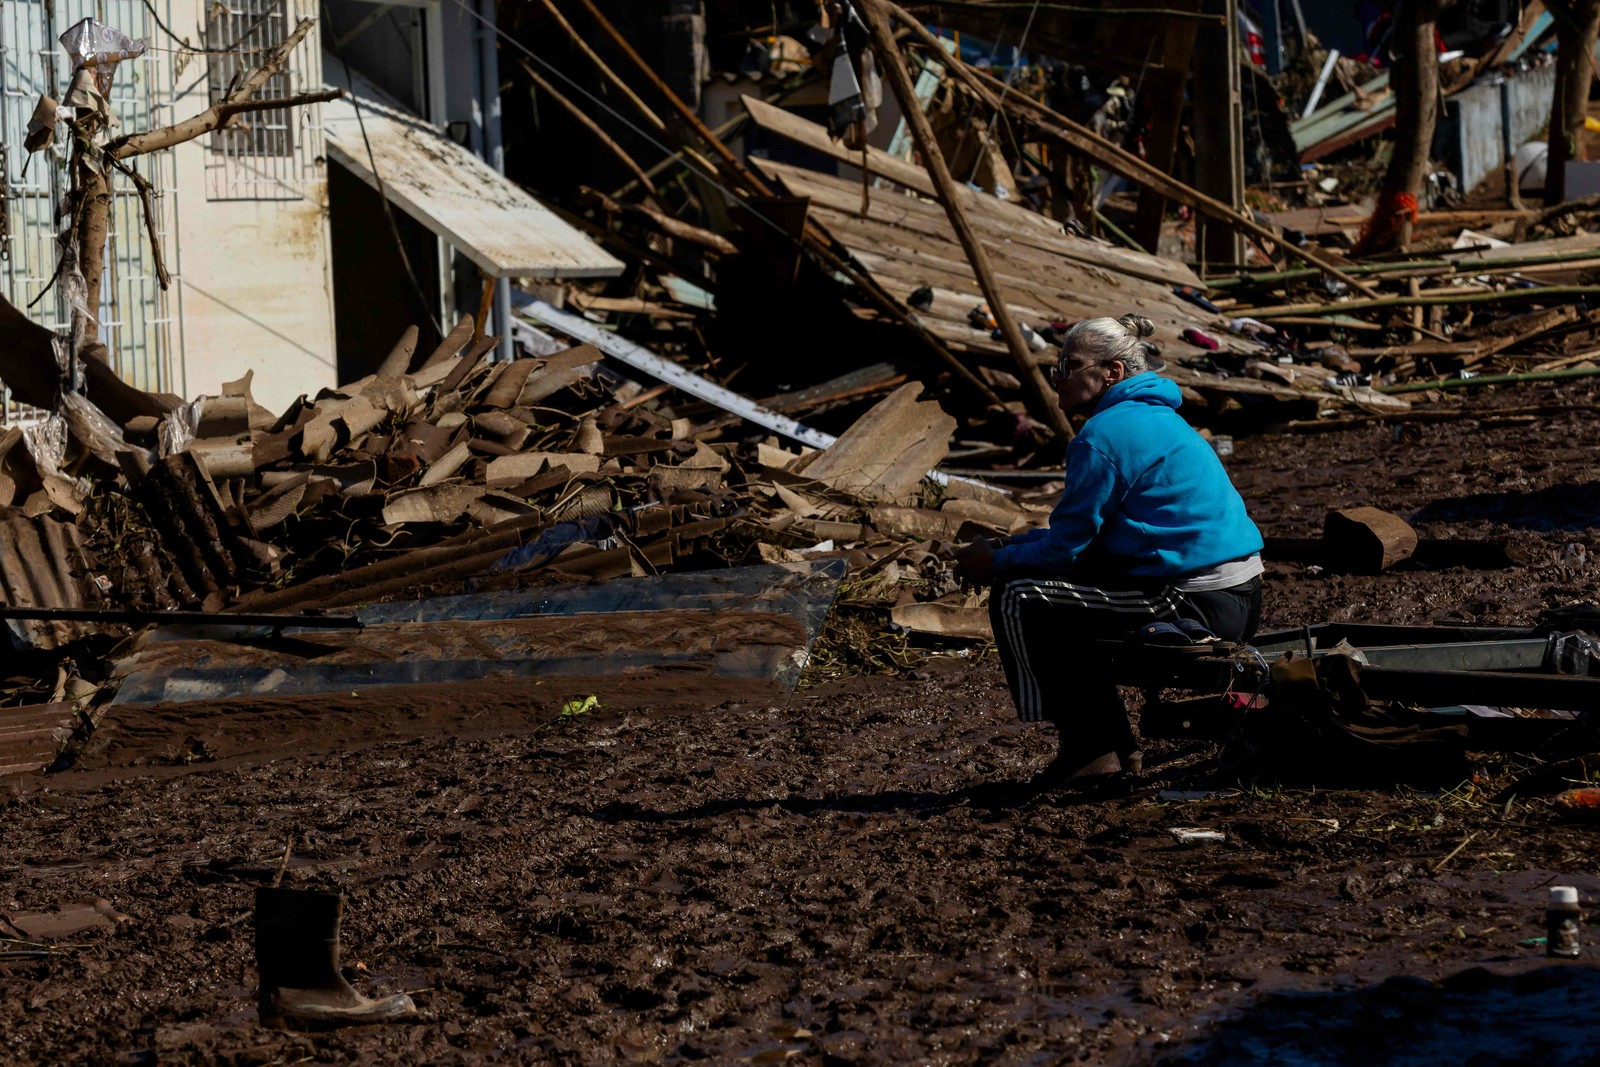 Uma mulher sentada em uma rua coberta de lama e detritos após um ciclone em Muçum, Rio Grande do Sul — Foto: SILVIO ÁVILA/AFP